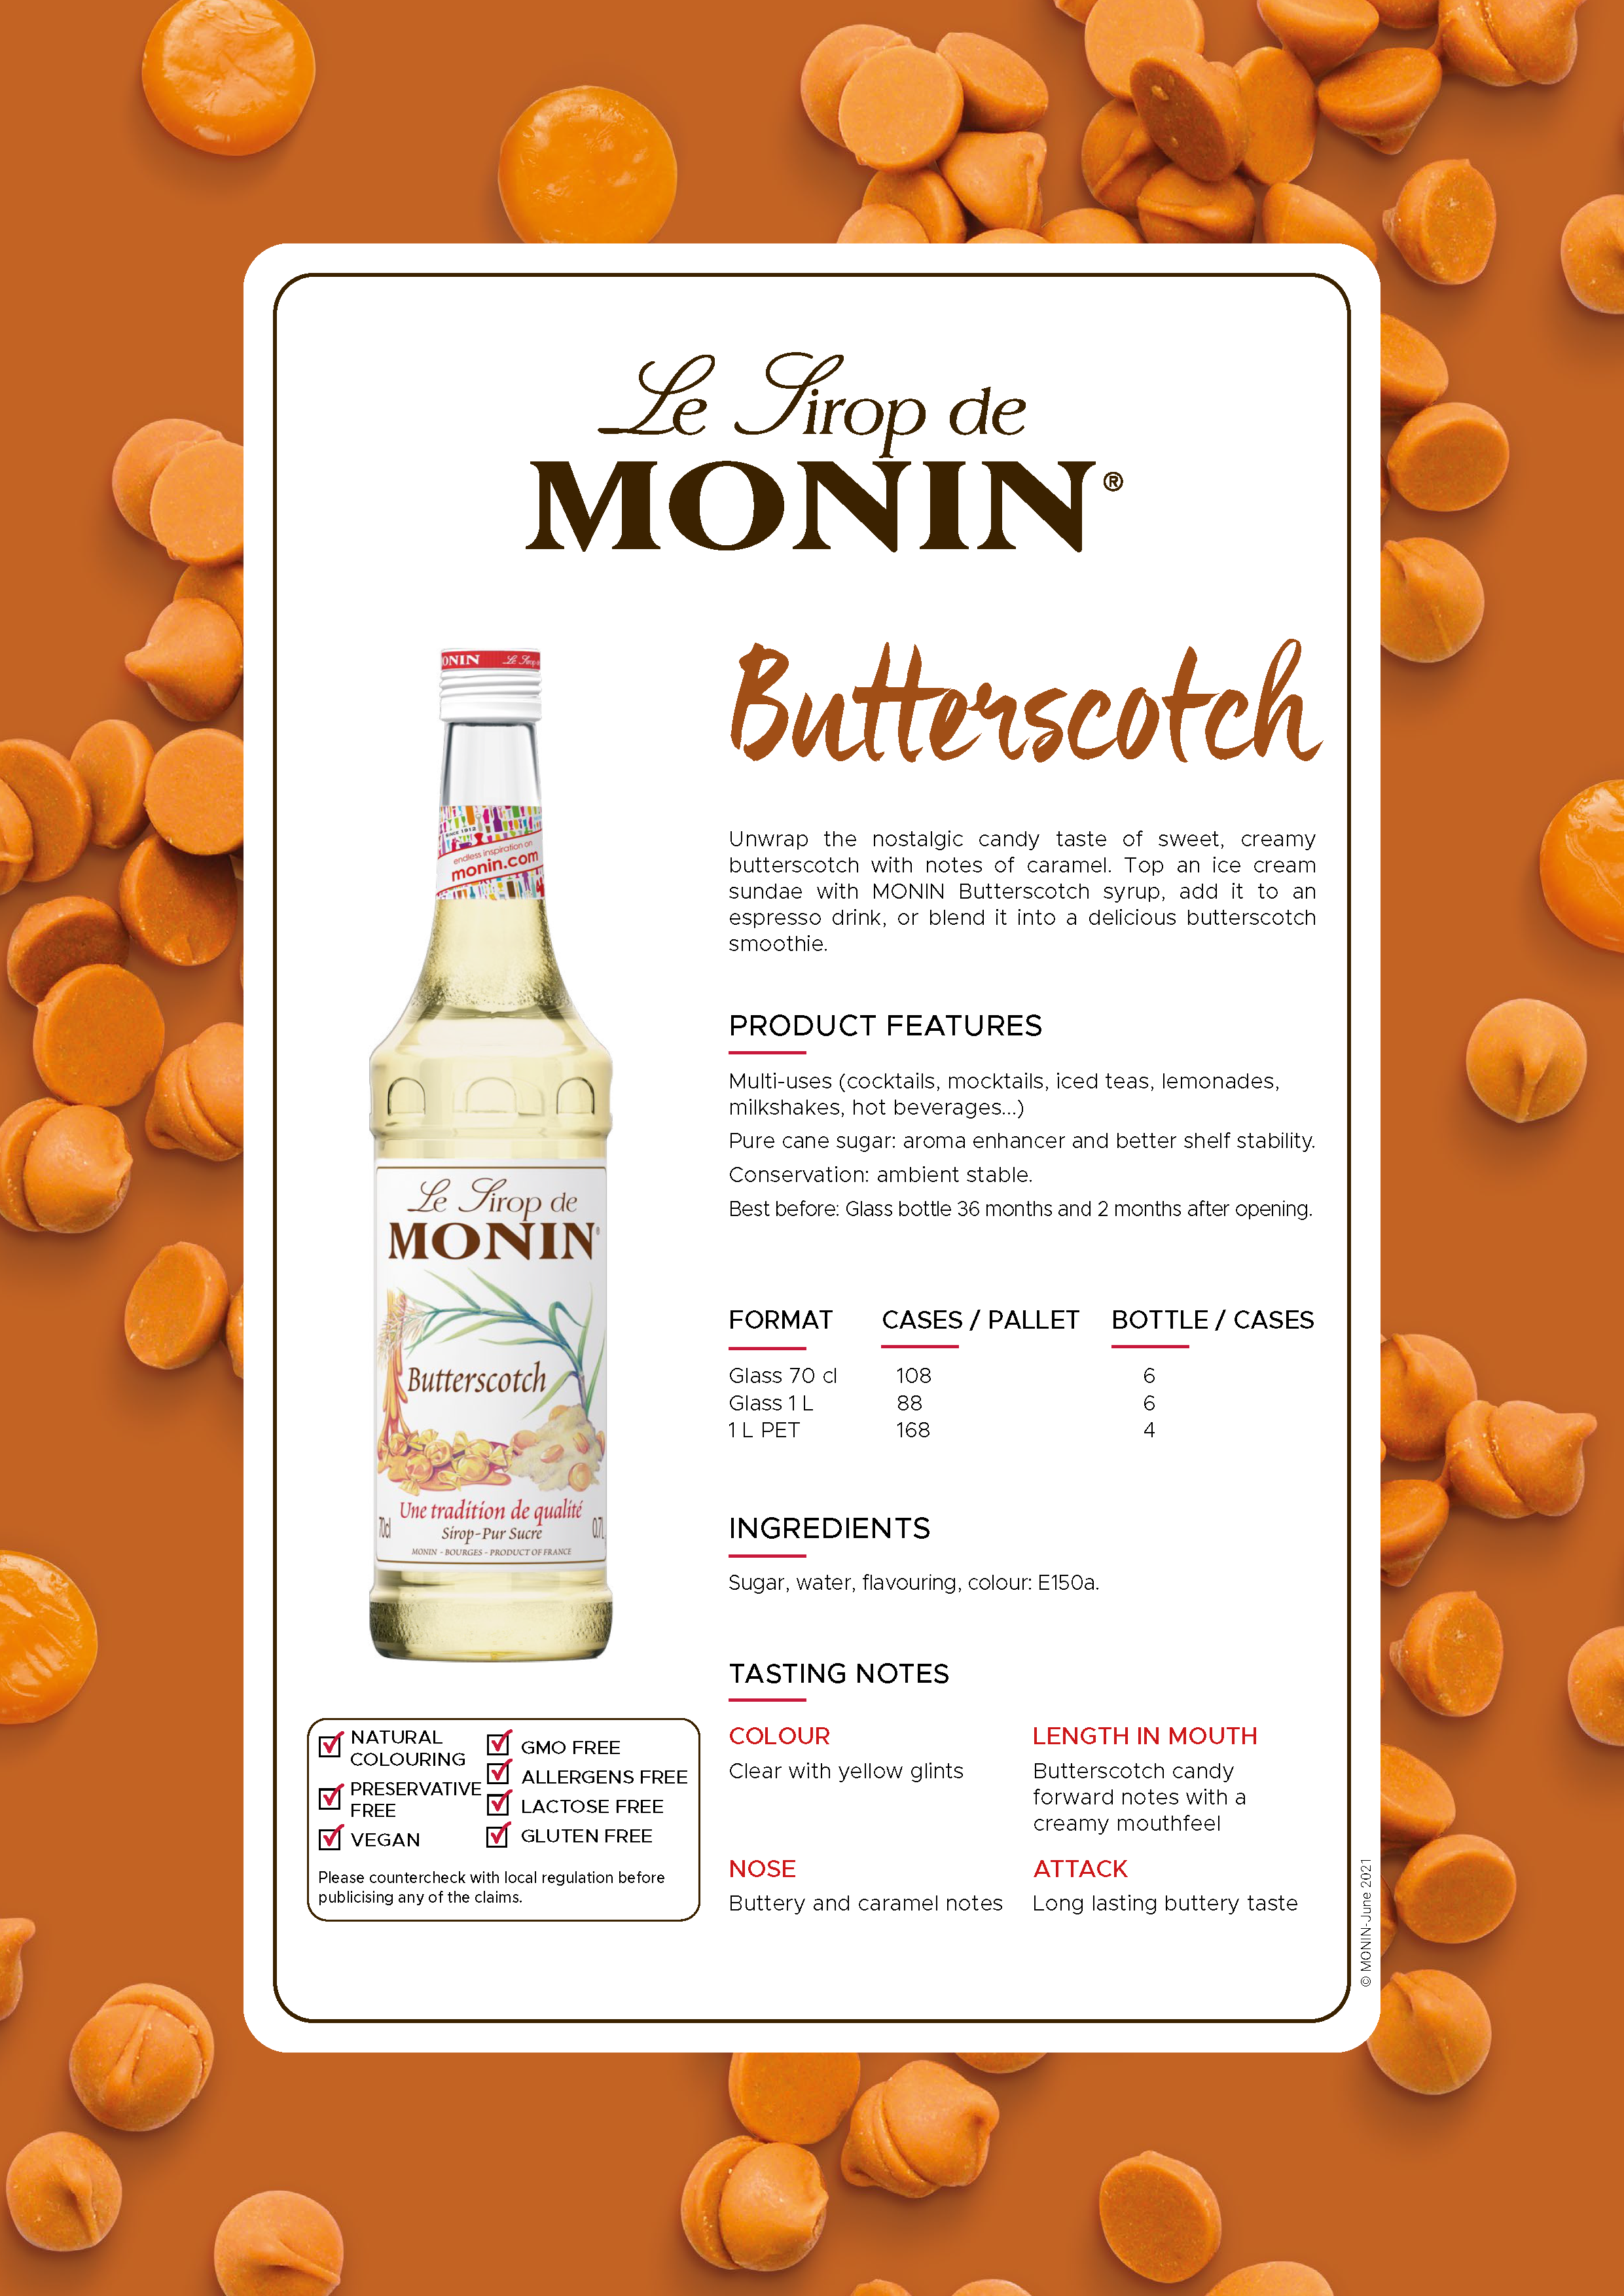 Monin Butterscotch Syrup 700ml (Box of 6)